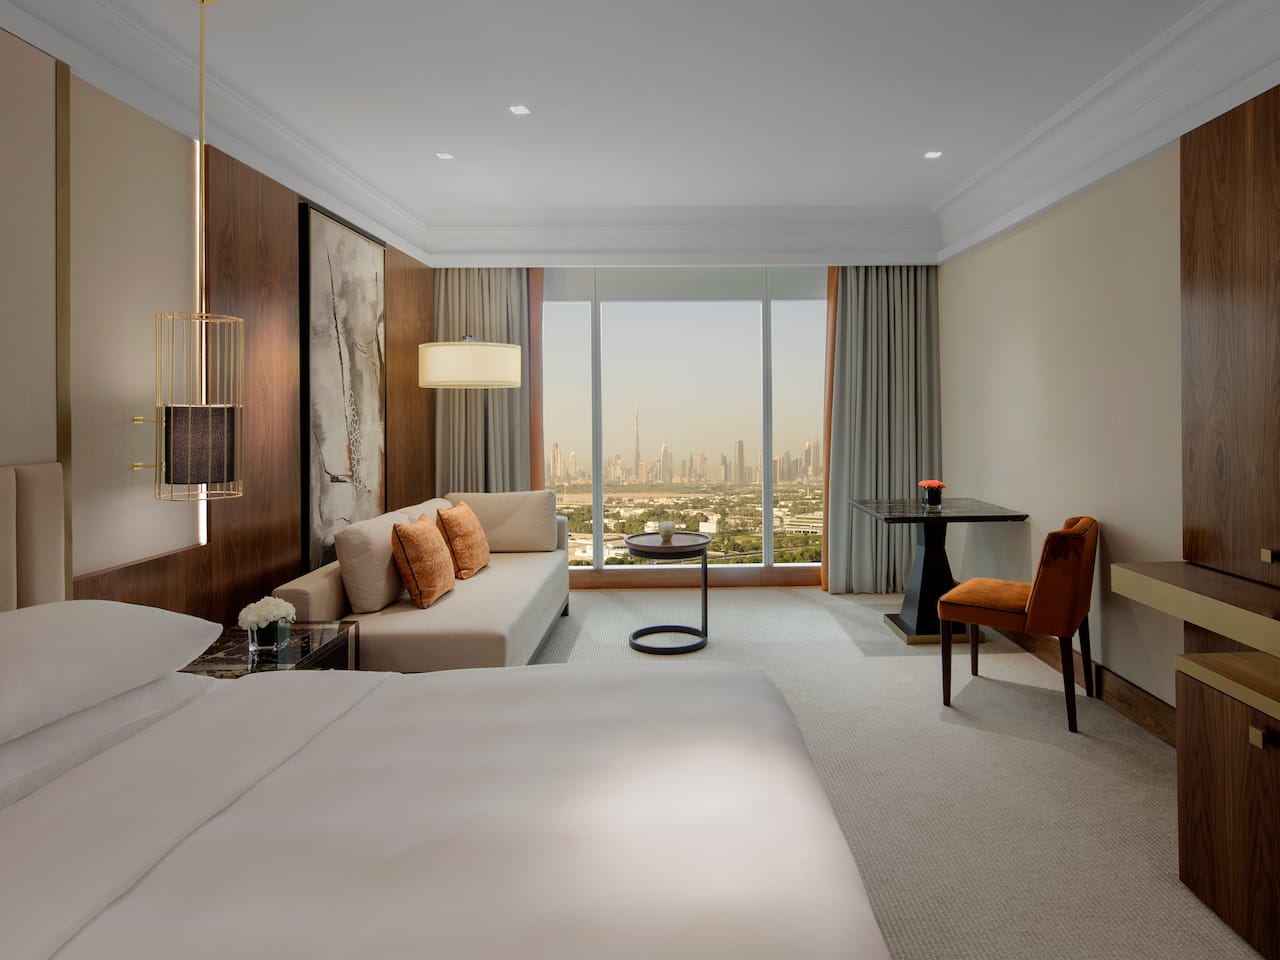 غرف ذات إطلالات خلابة على الأفق في فندق جراند حياة دبي.